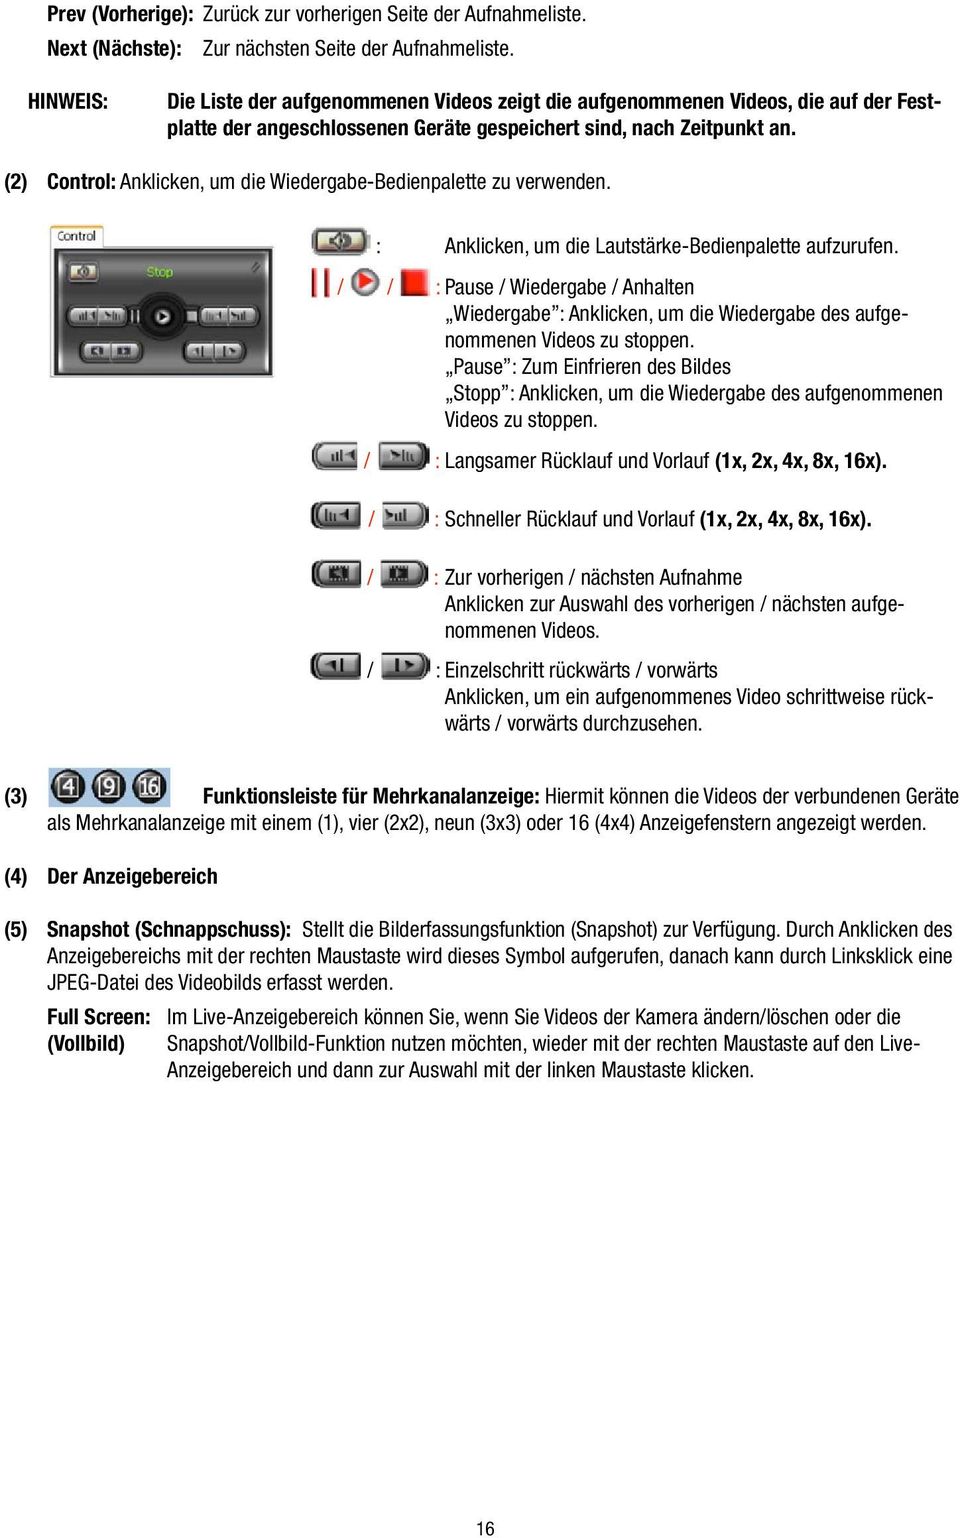 (2) Control: Anklicken, um die Wiedergabe-Bedienpalette zu verwenden. : Anklicken, um die Lautstärke-Bedienpalette aufzurufen.